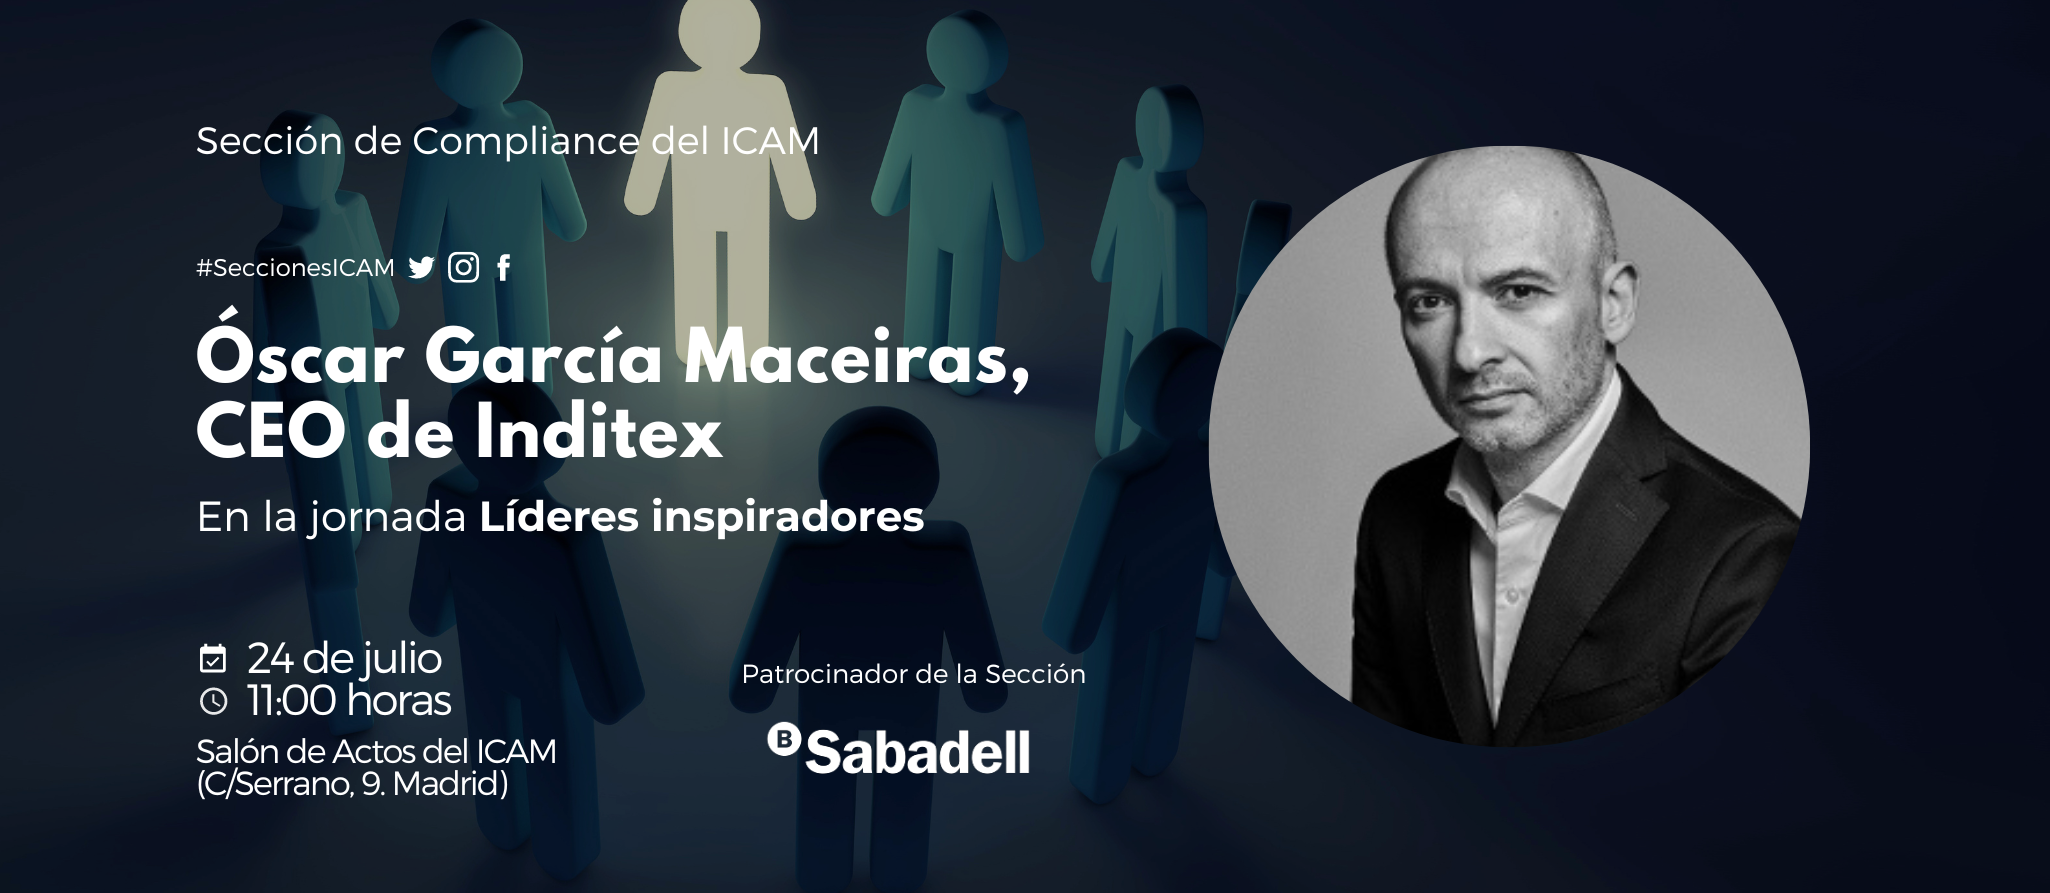 El CEO de Inditex, Óscar García Maceiras, protagonizará el 24 de julio la jornada de la Sección de Compliance del ICAM “Líderes inspiradores”